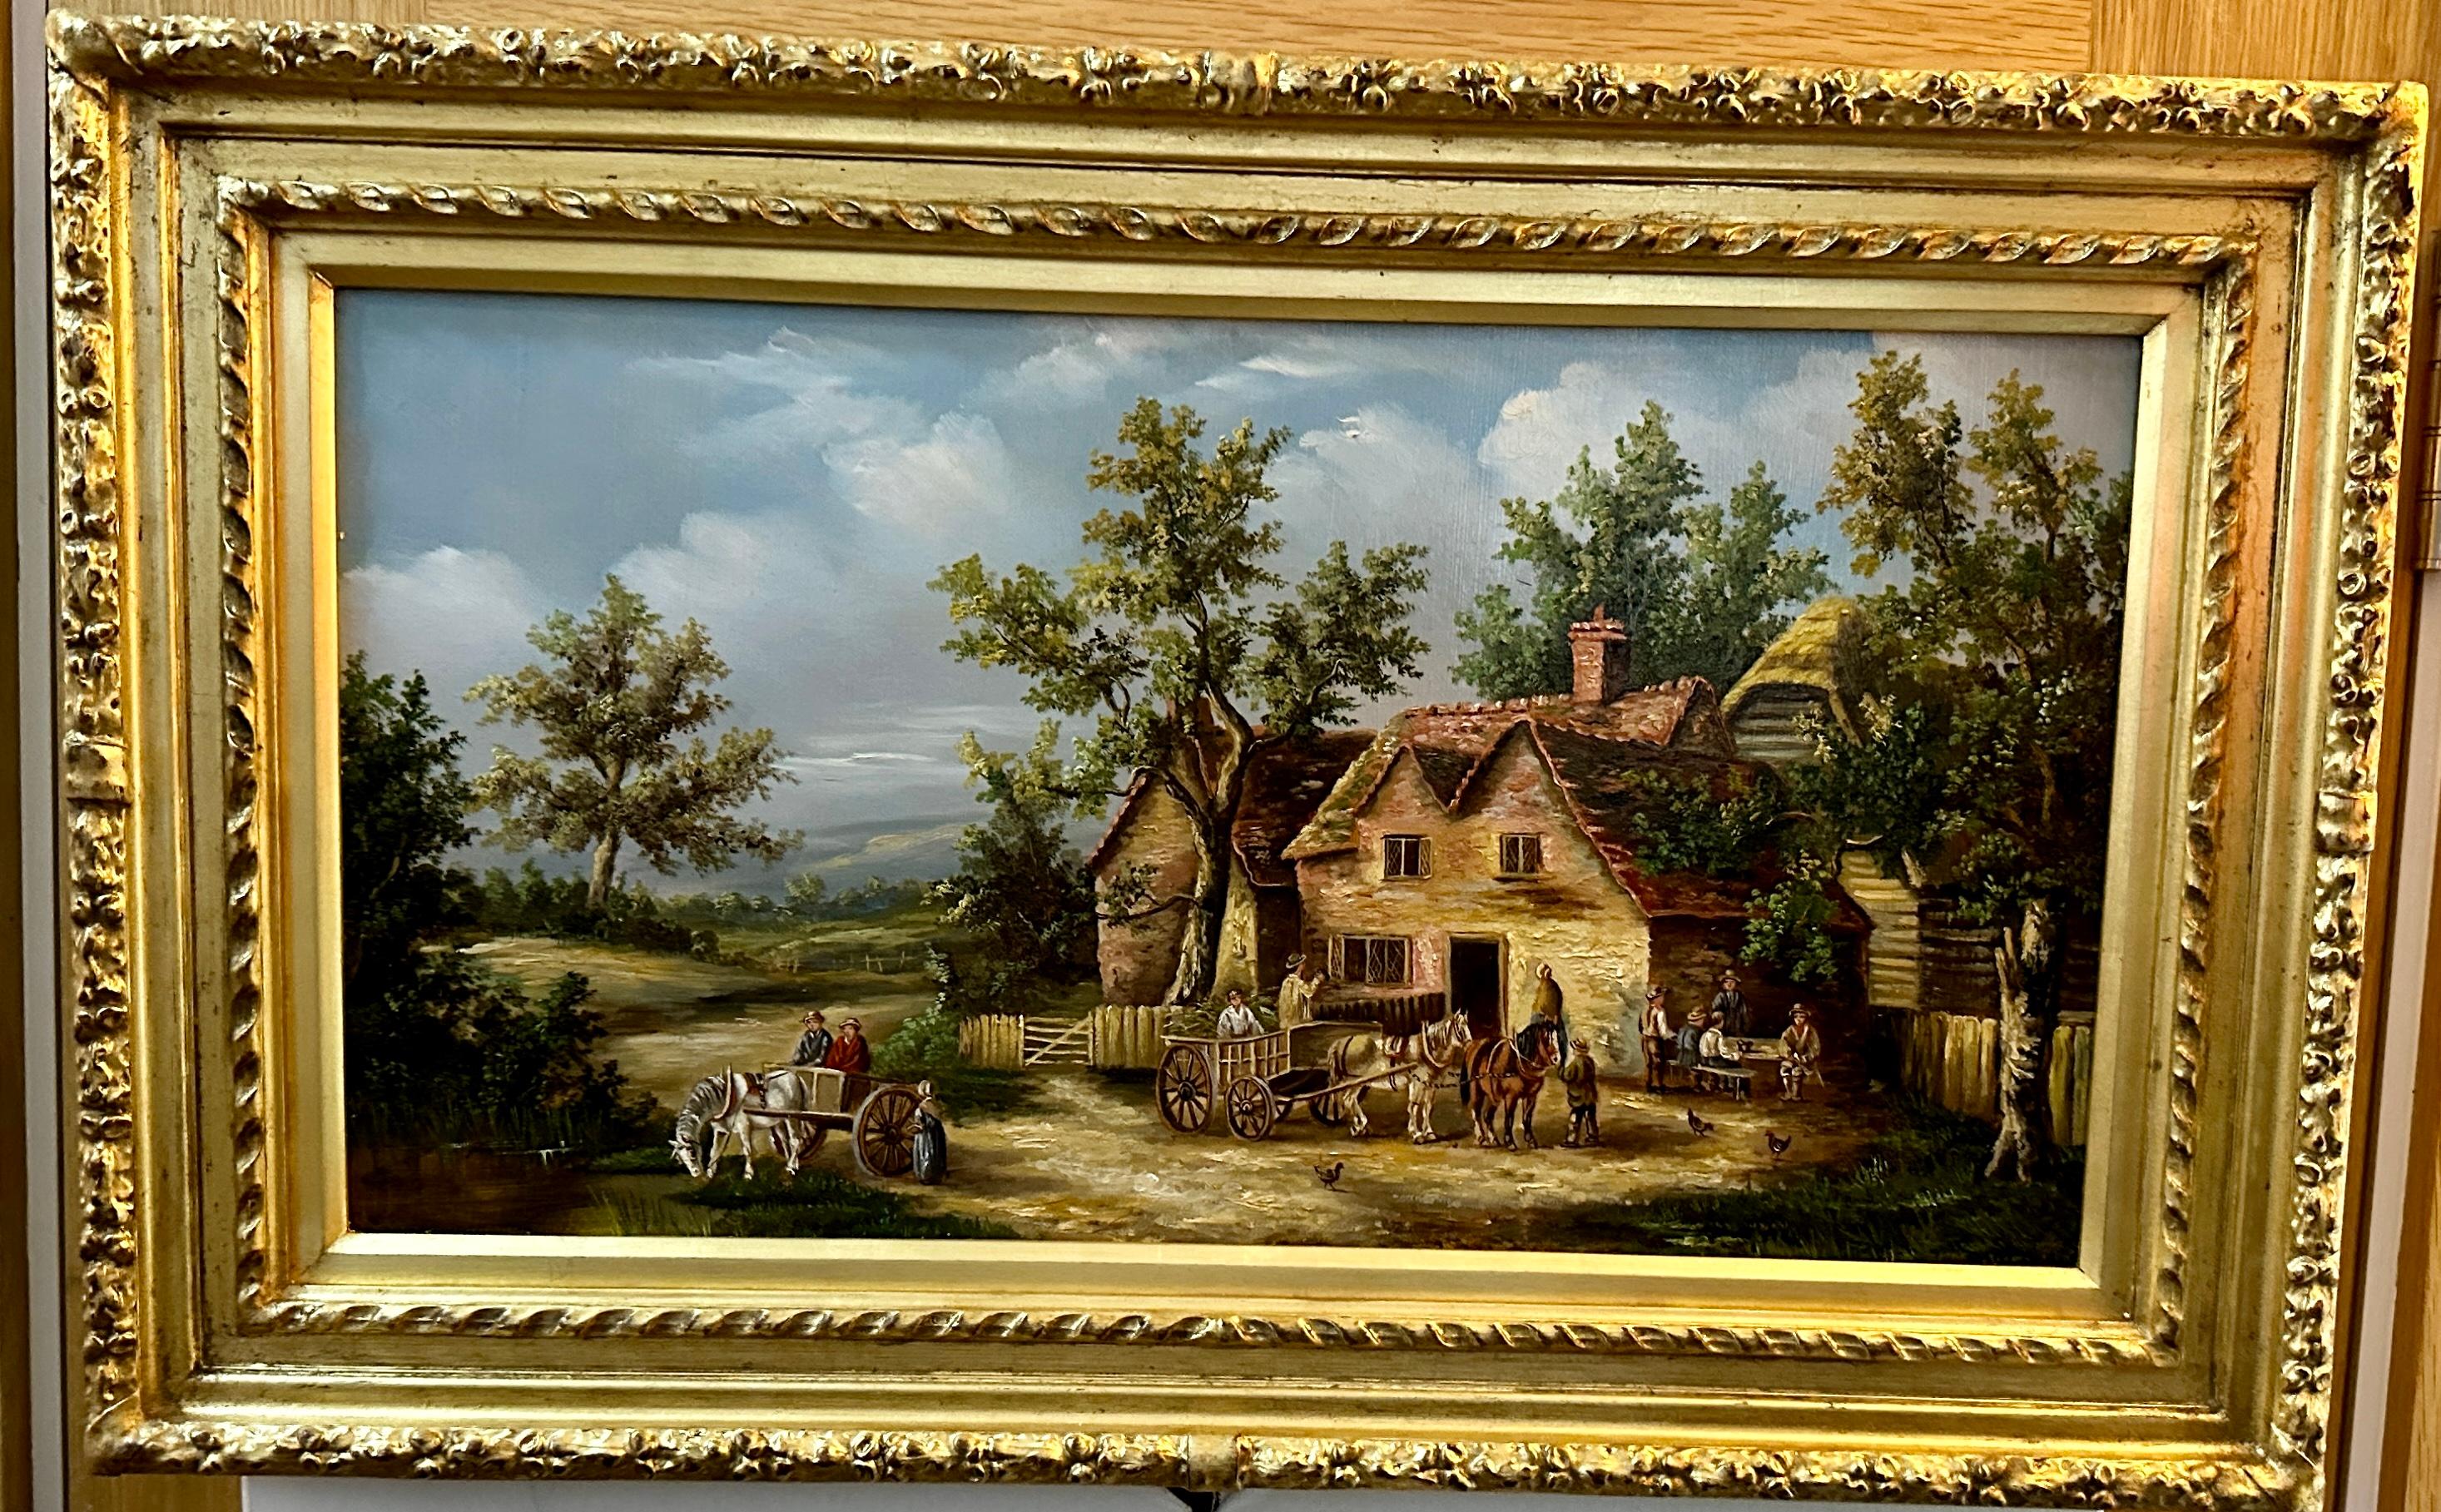 Scène de village anglaise du 19e siècle avec cottages, chevaux et personnes